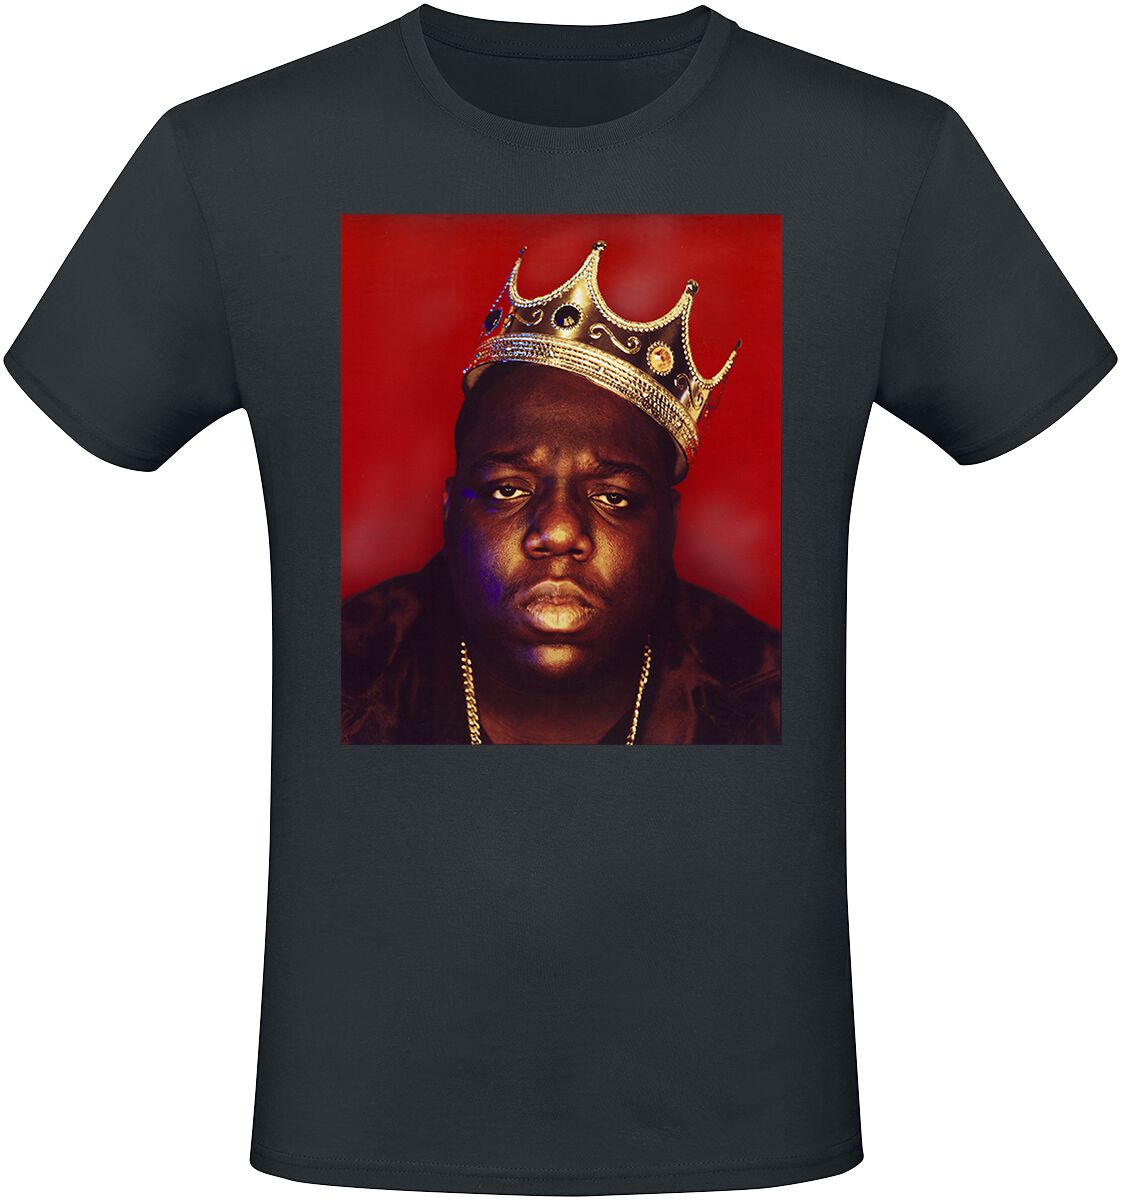 Notorious B.I.G. T-Shirt - Big Crown - S bis XXL - für Männer - Größe M - schwarz  - Lizenziertes Merchandise!